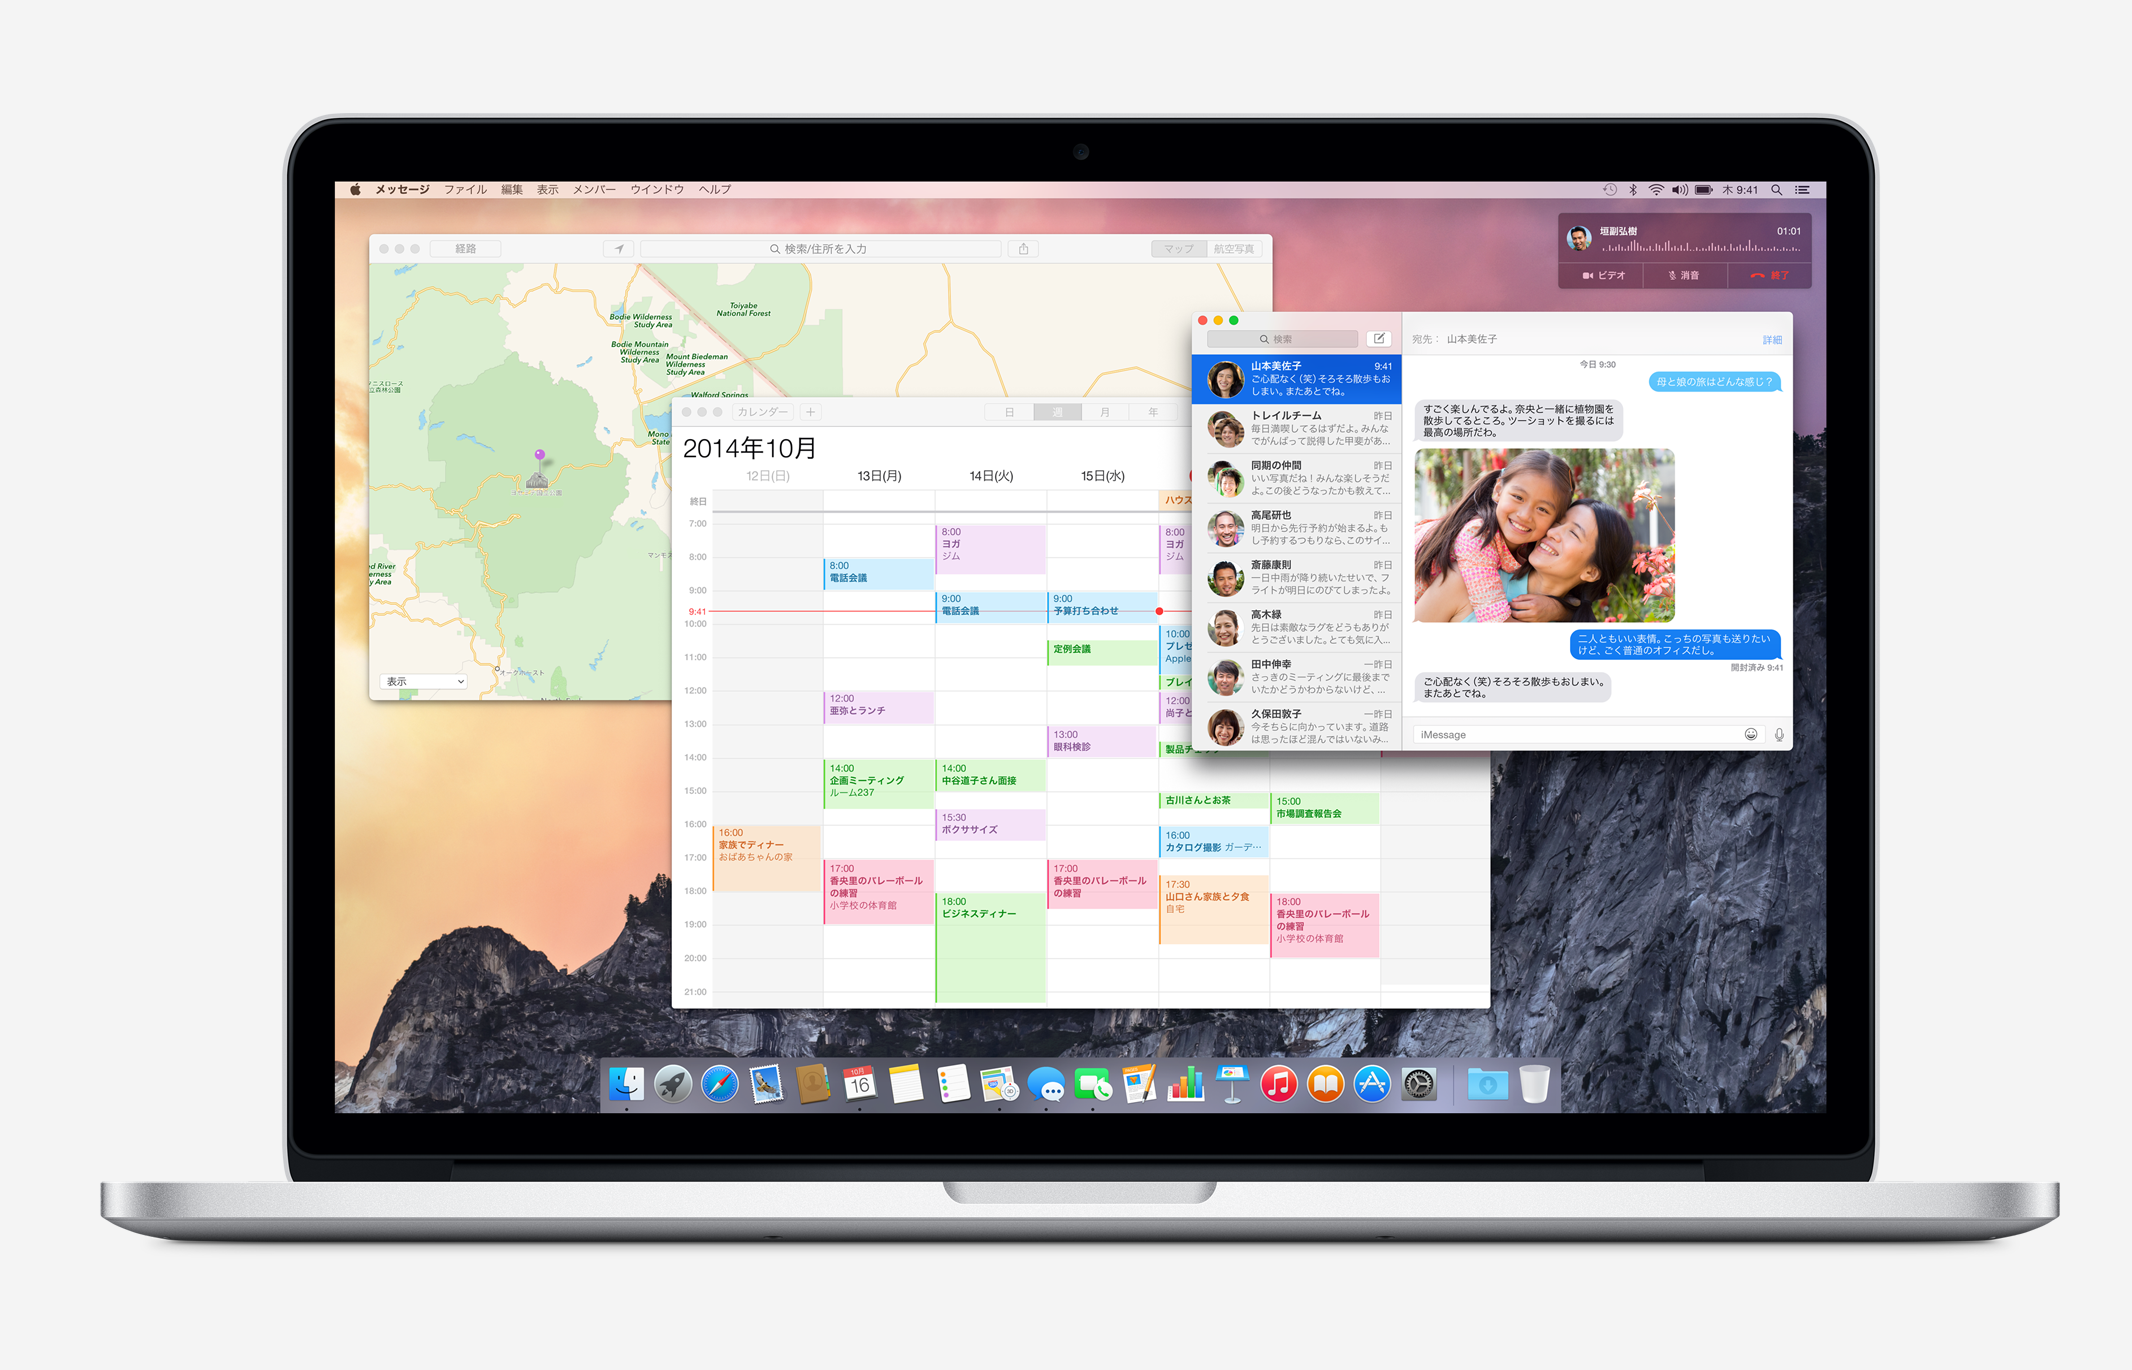 MacのOS、Yosemiteのデザインで一箇所だけ気になる所